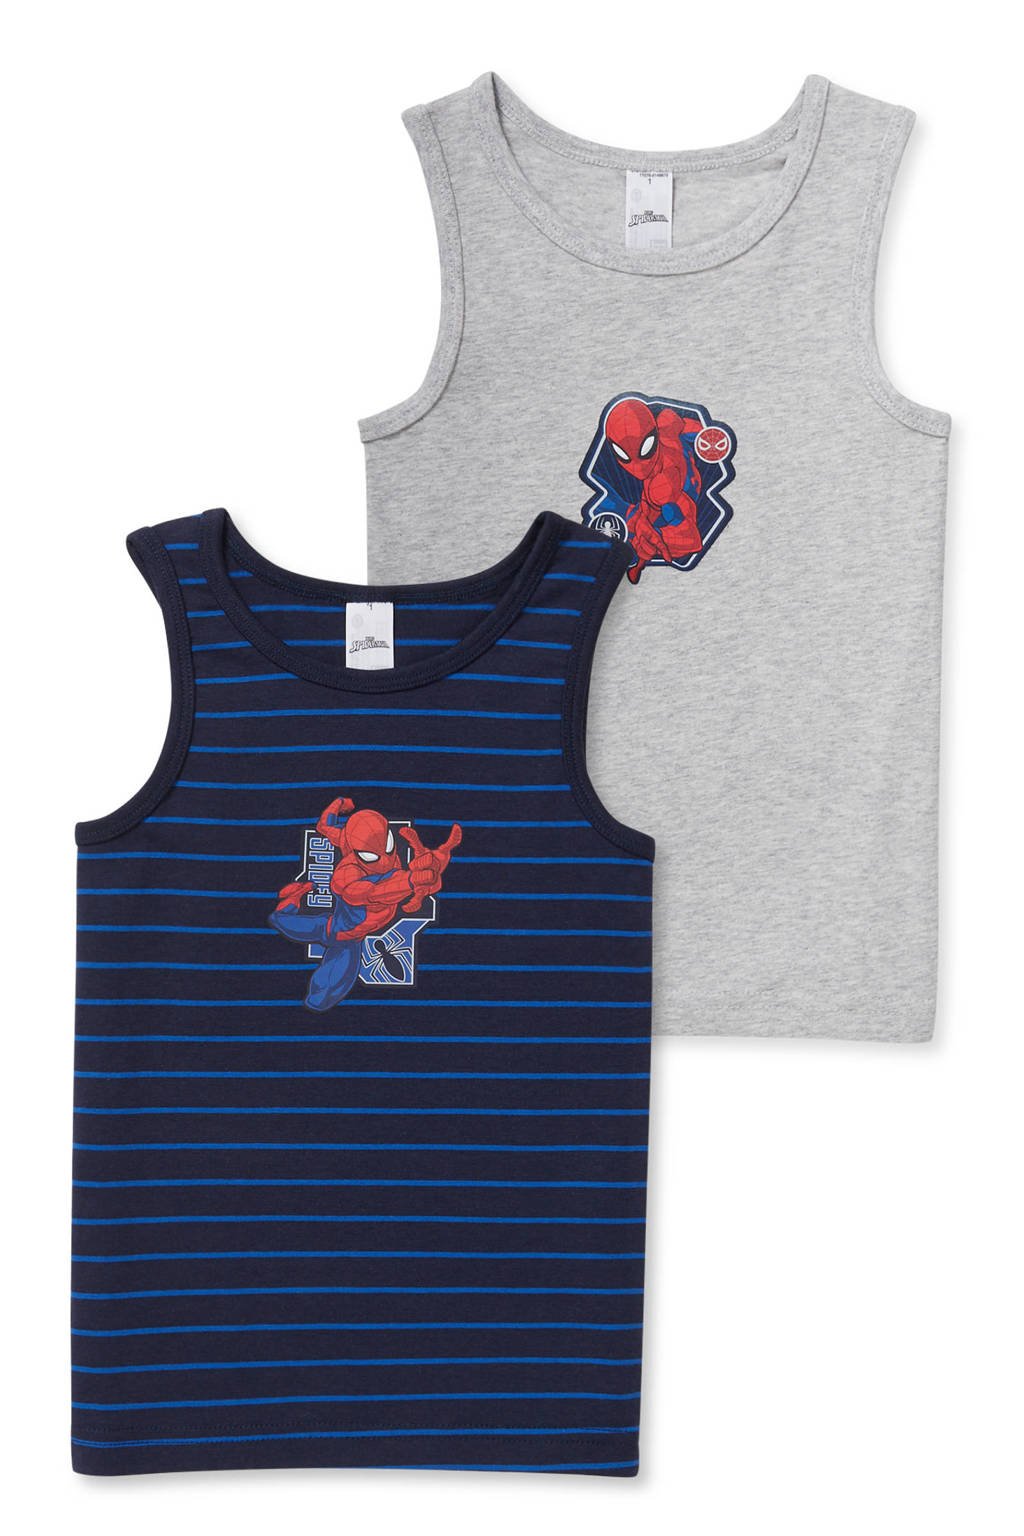 C&A Spiderman hemd - set van 2 donkerblauw/grijs spiderman